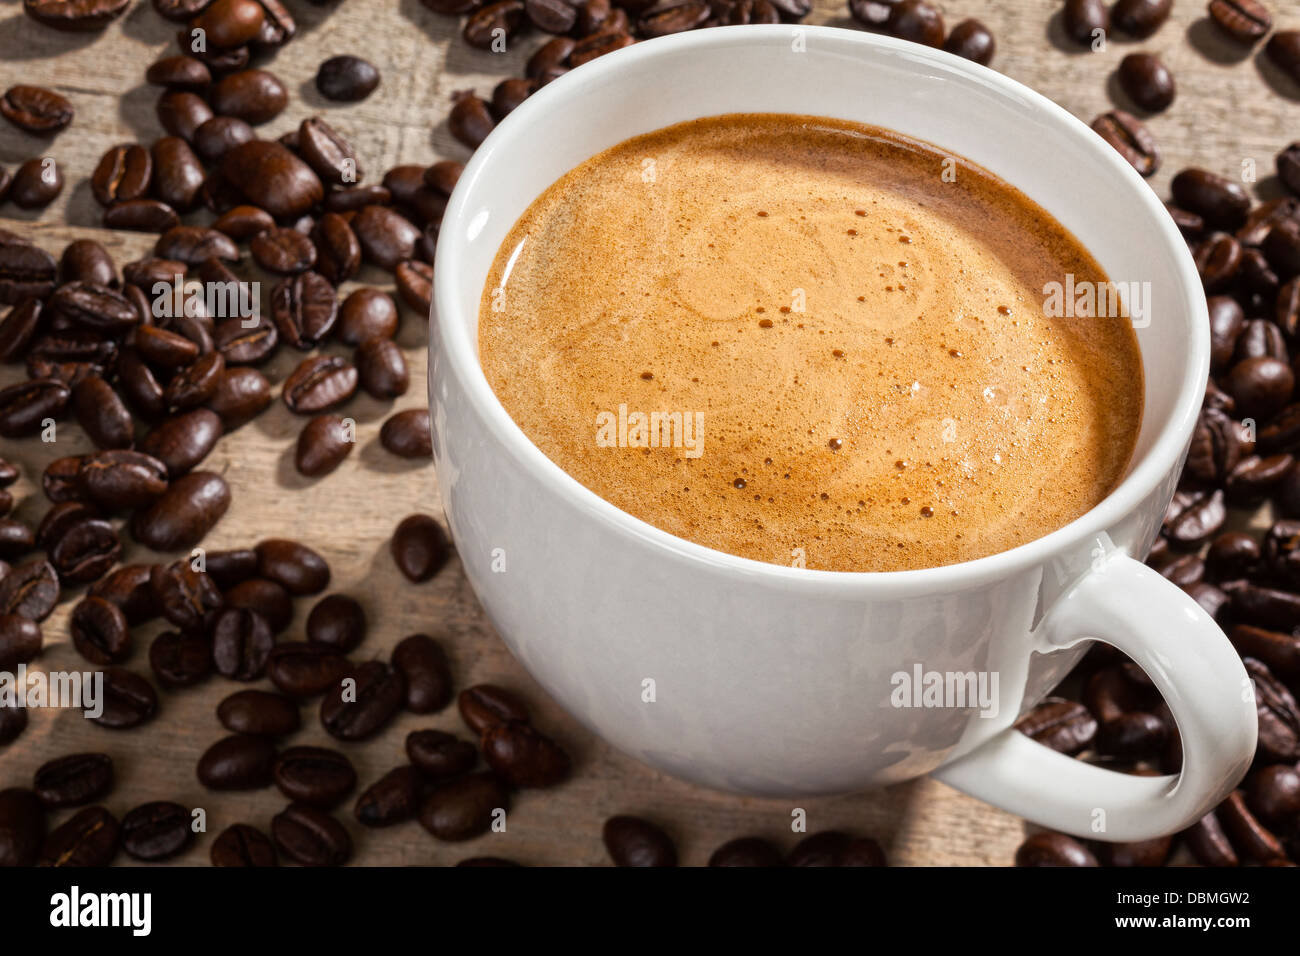 Caffè espresso e caffè in grani - una tazza di caffè espresso su un sfondo rustico con i chicchi di caffè. Focus sul caffè. Foto Stock